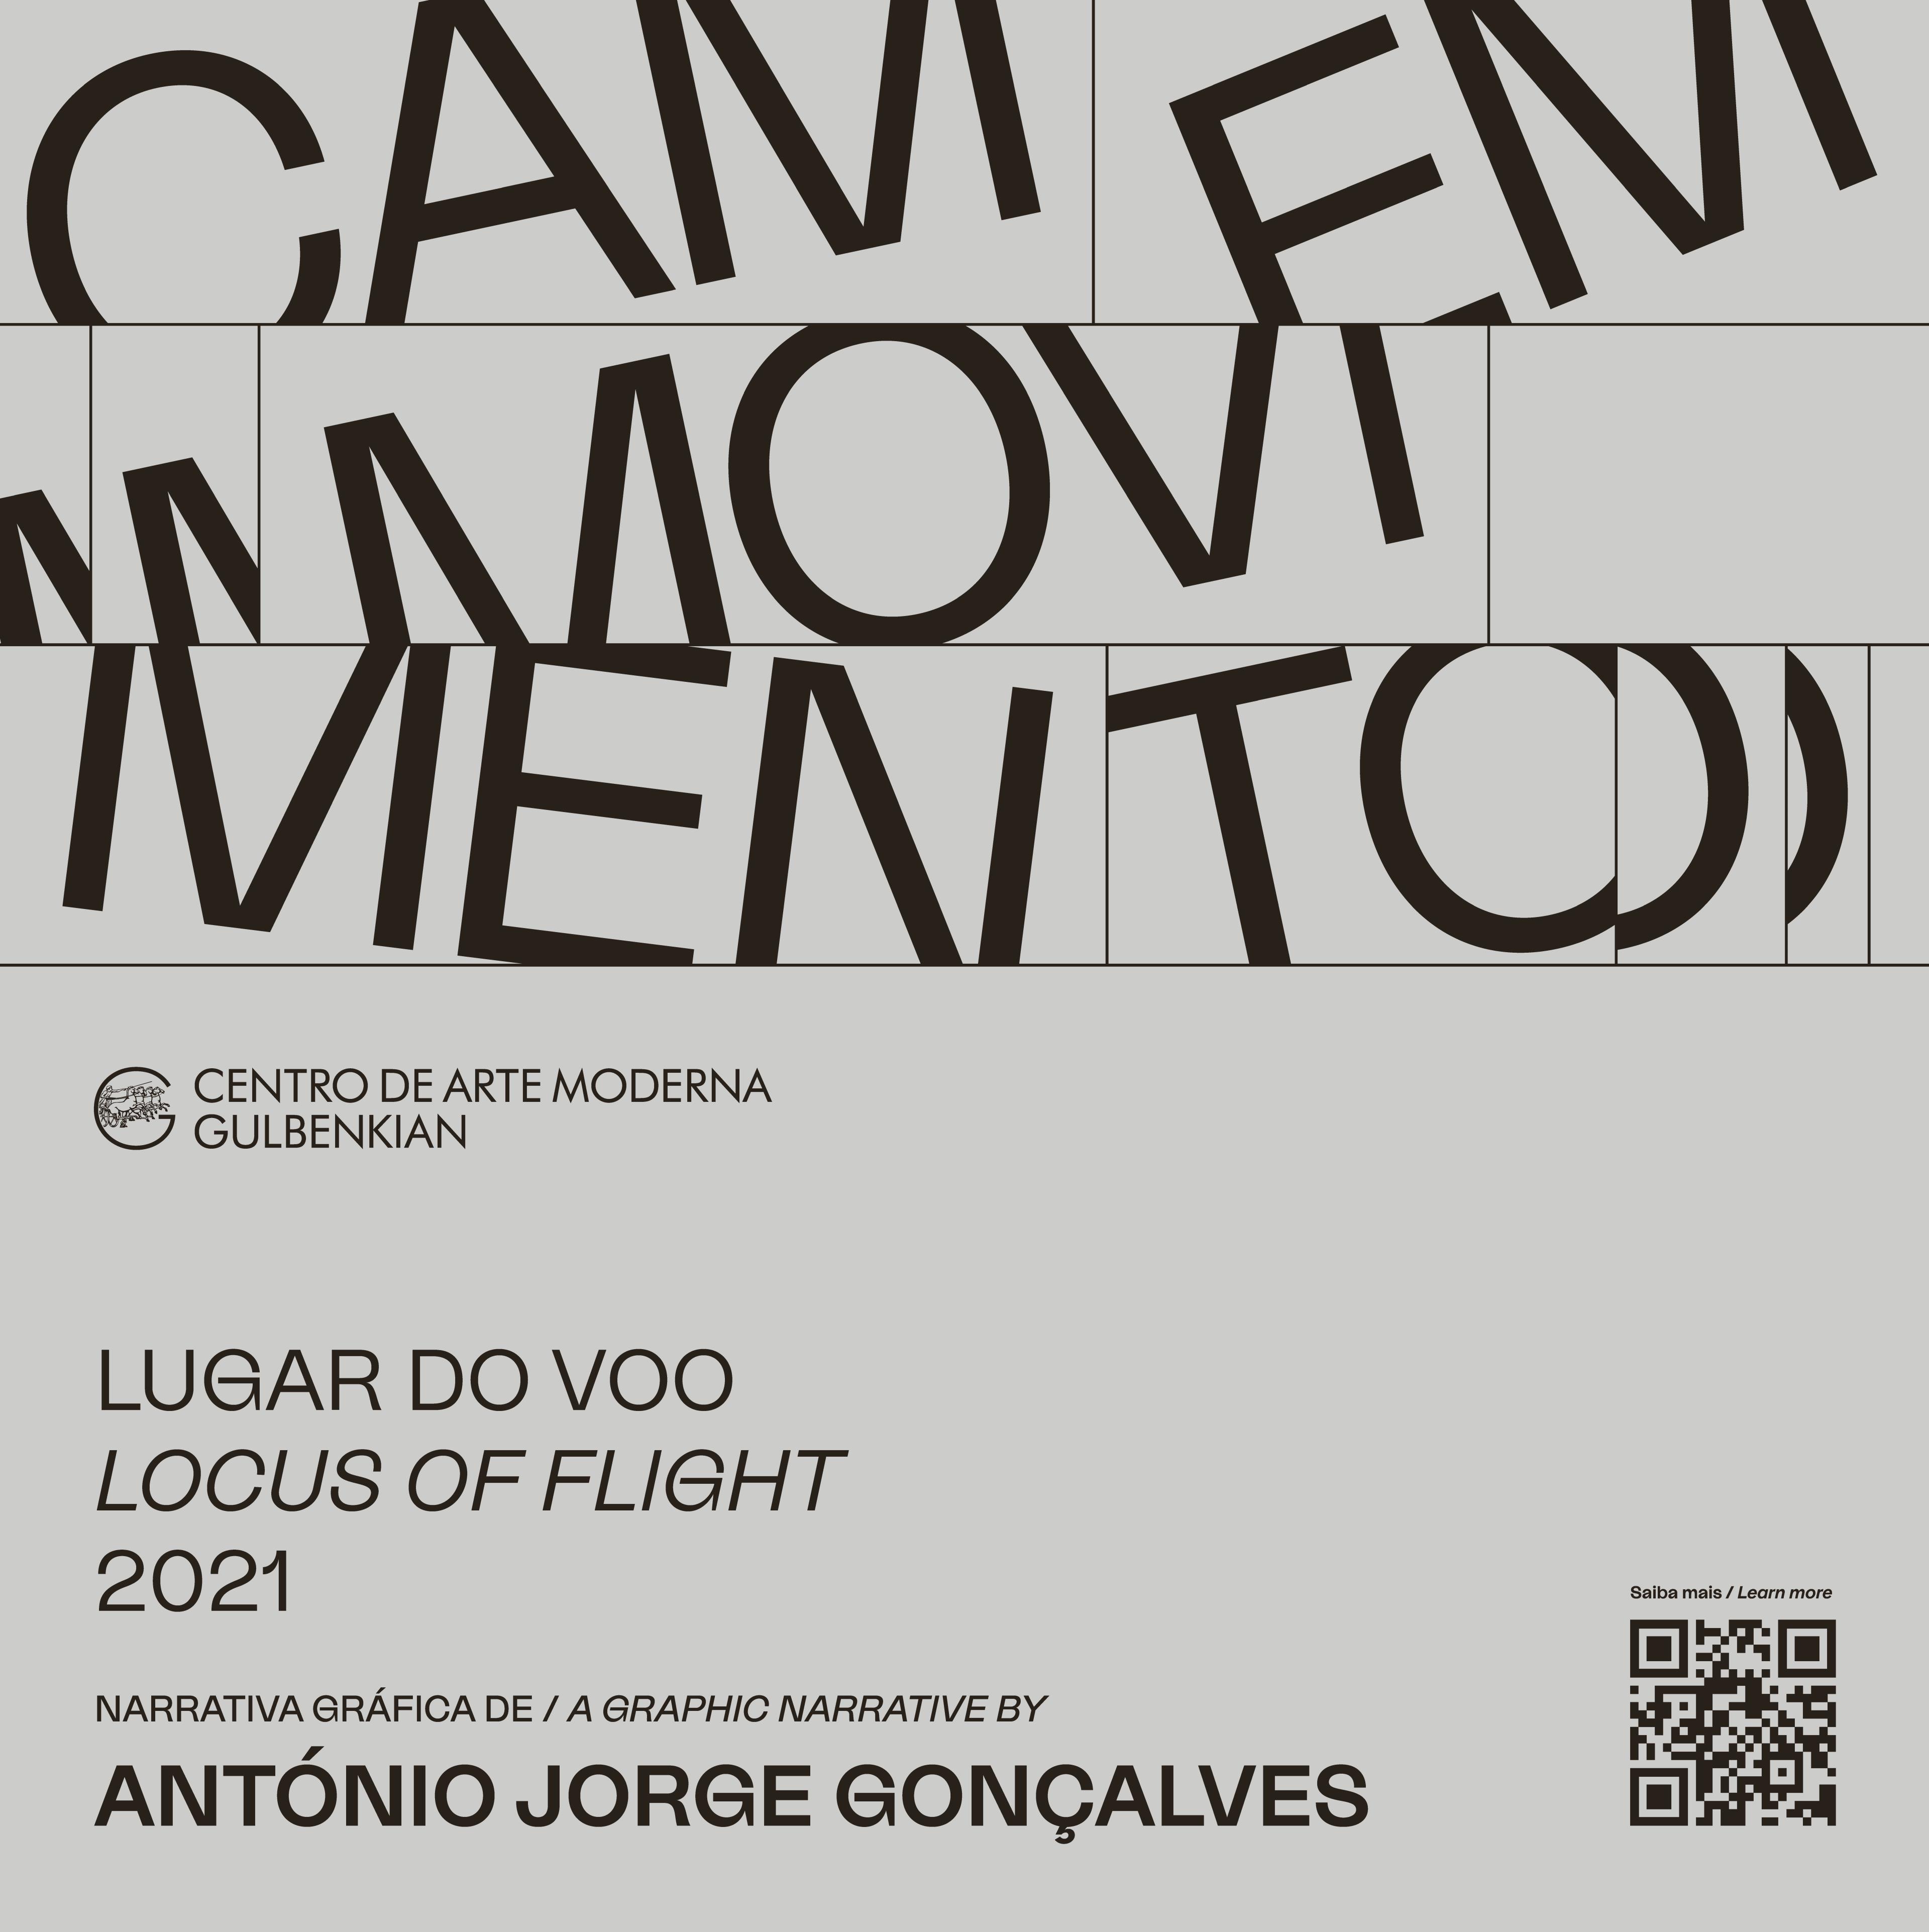 CAM em Movimento: António Jorge Gonçalves